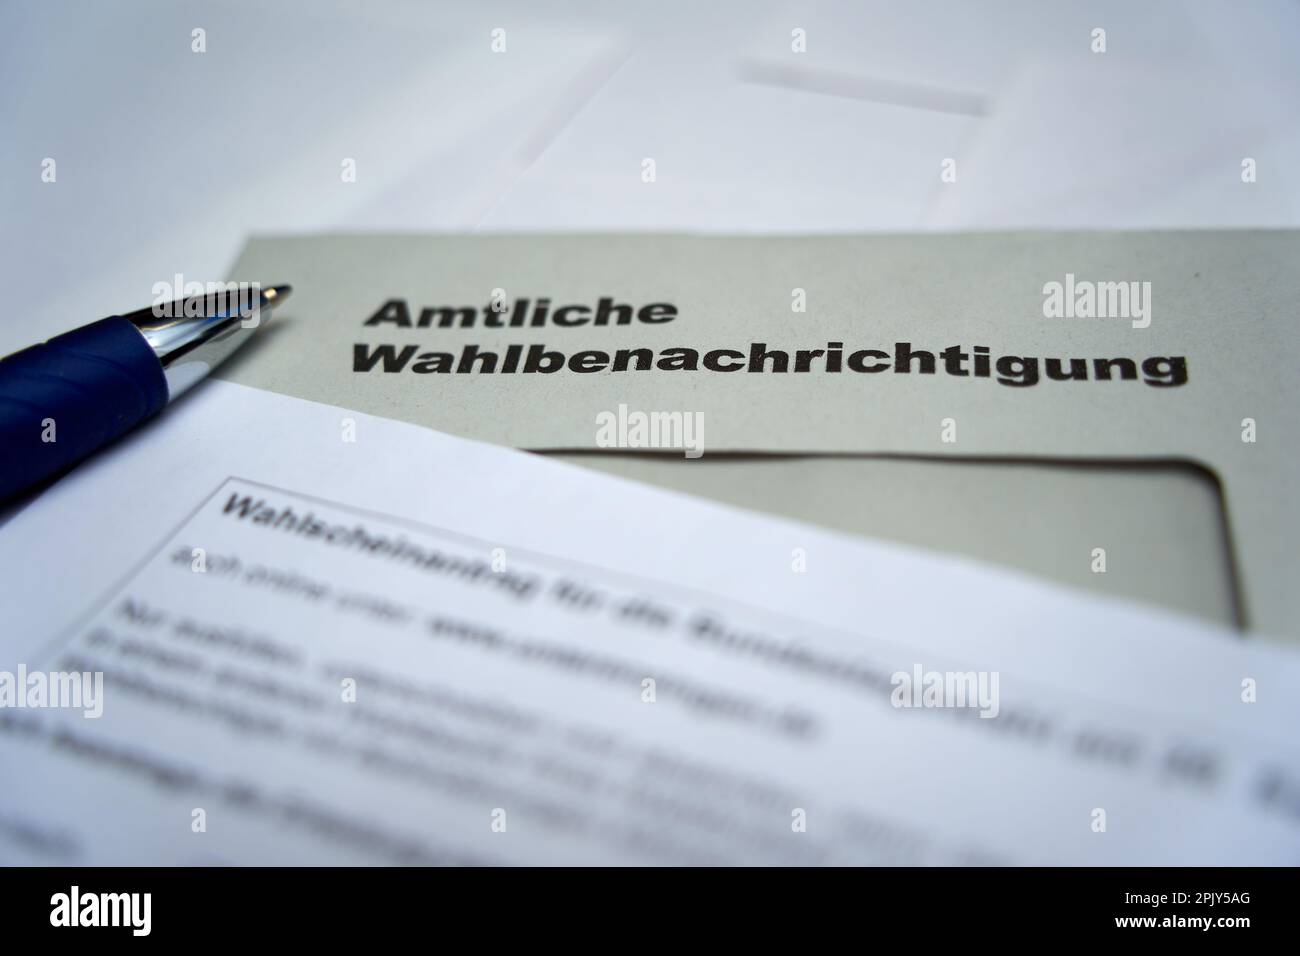 Stuttgart, Allemagne - 28 août 2021: Notification officielle des élections (Wahlbenachrichtigung Bundestag) pour l'élection fédérale en allemagne. Conseil de Banque D'Images